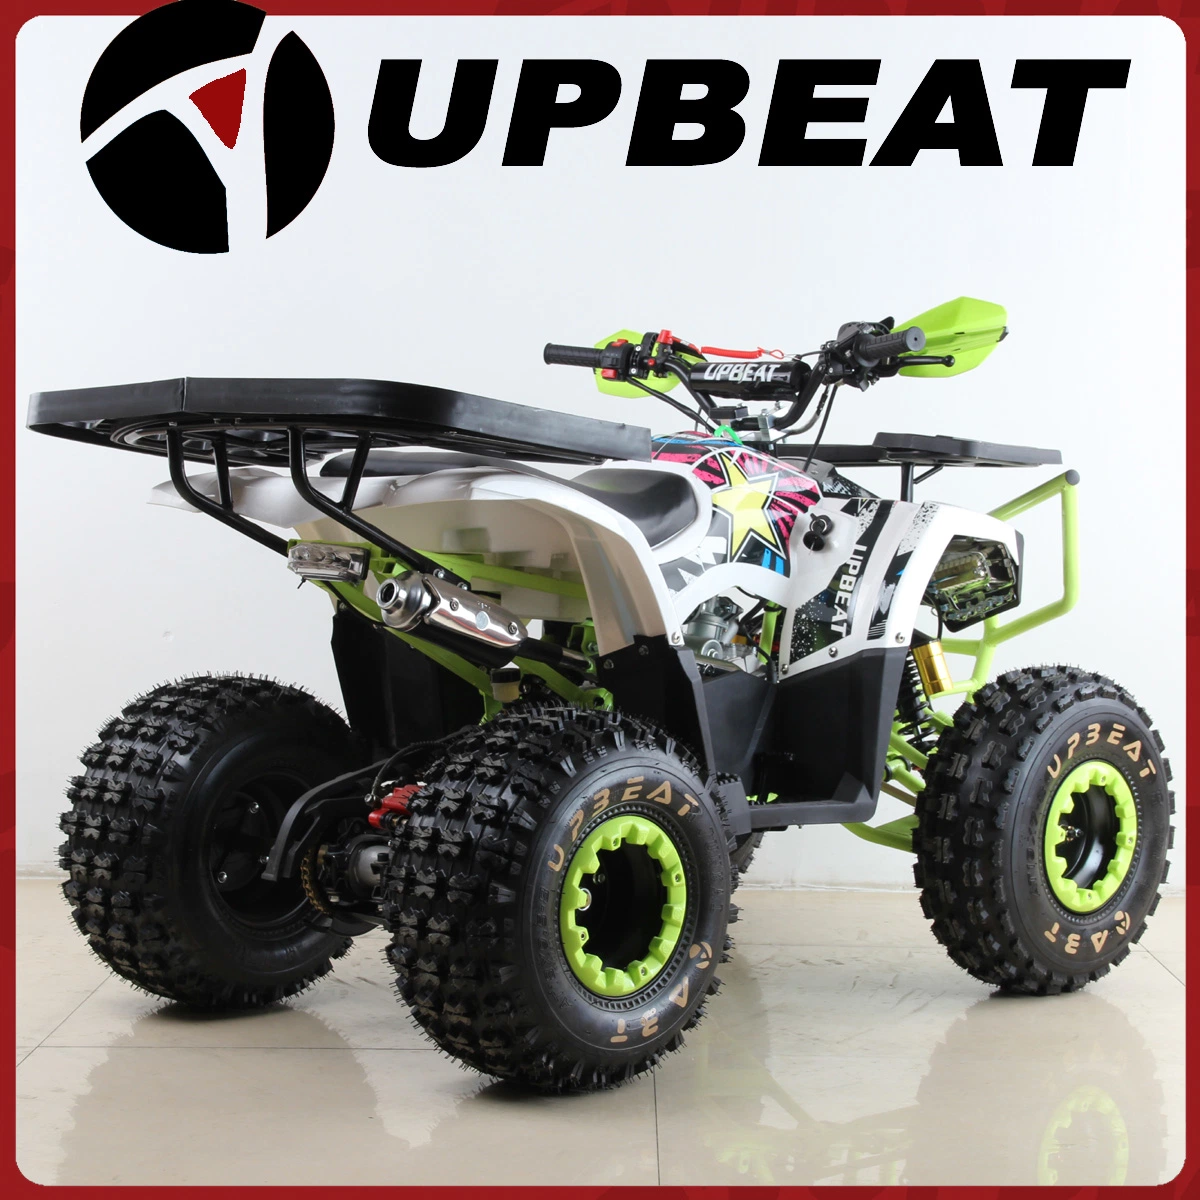 Upbeat 125cc ATV Quad Bike mit 8 Zoll Reifen groß Schutz Von Vorne